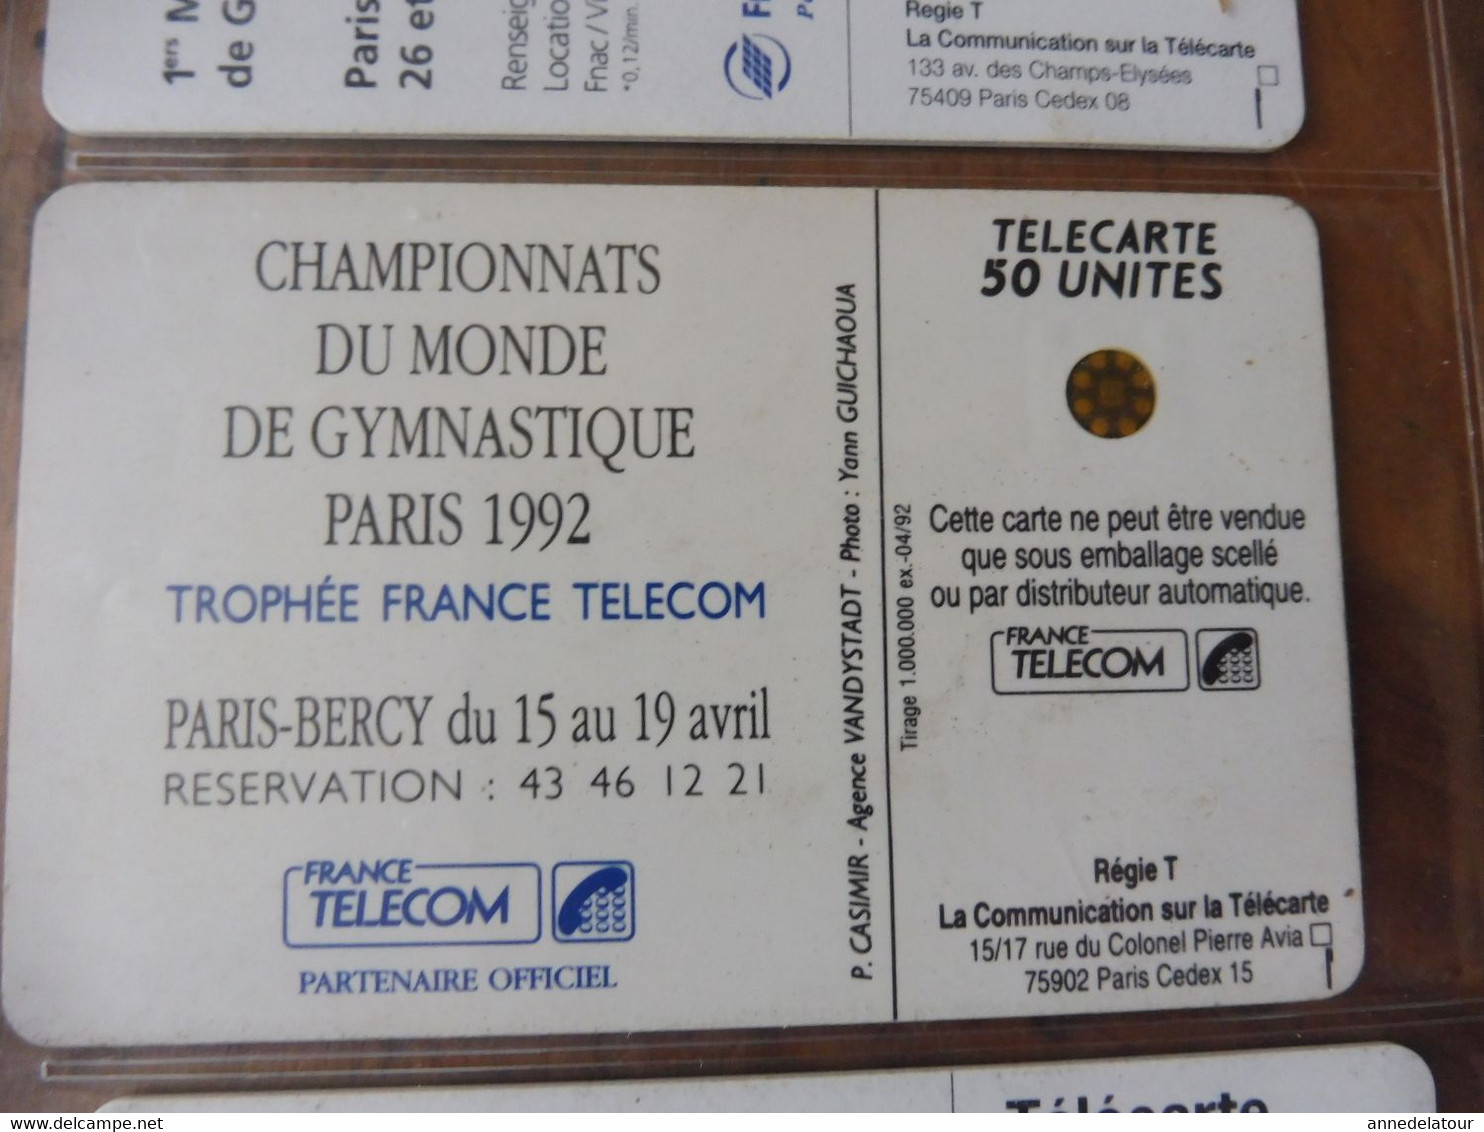 8 Télécartes  FRANCE TELECOM   publicité sportive